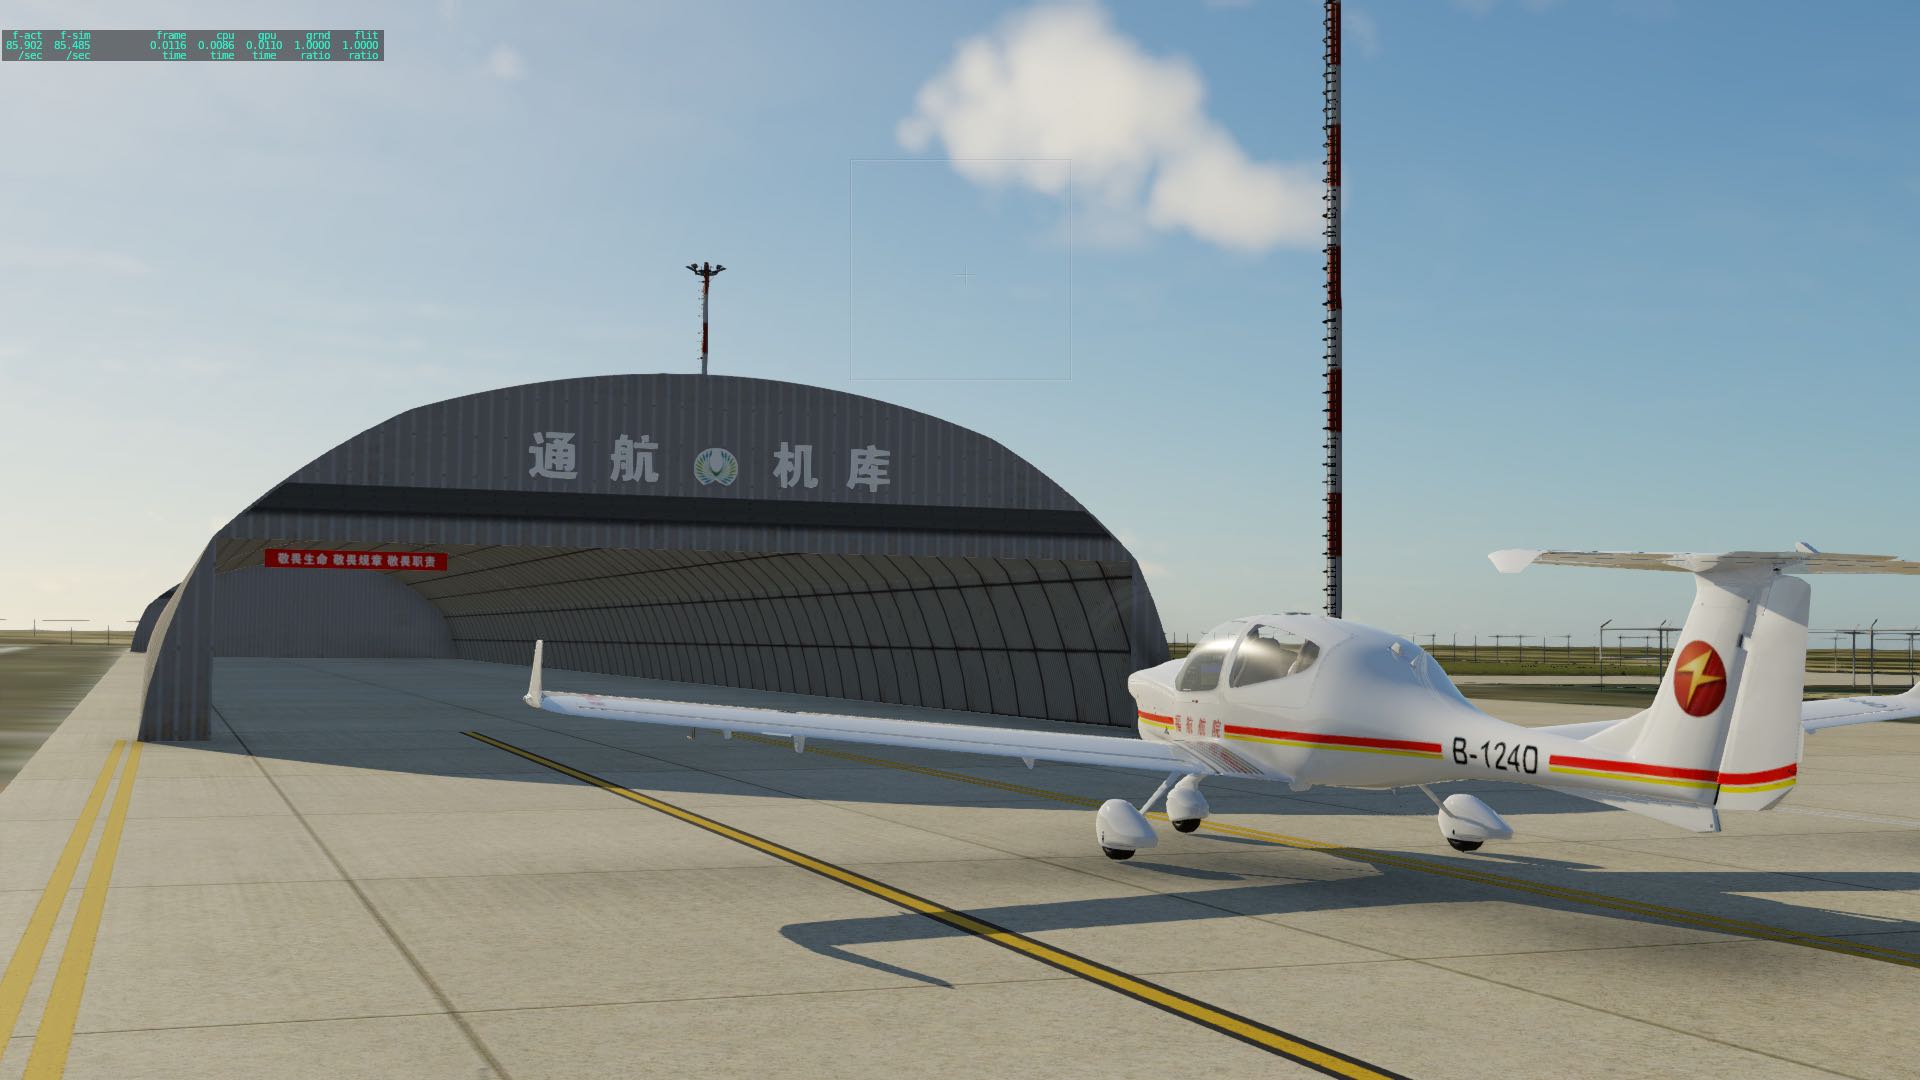 【预告】X-Plane 12松原查干湖机场 ZYSQ-2883 